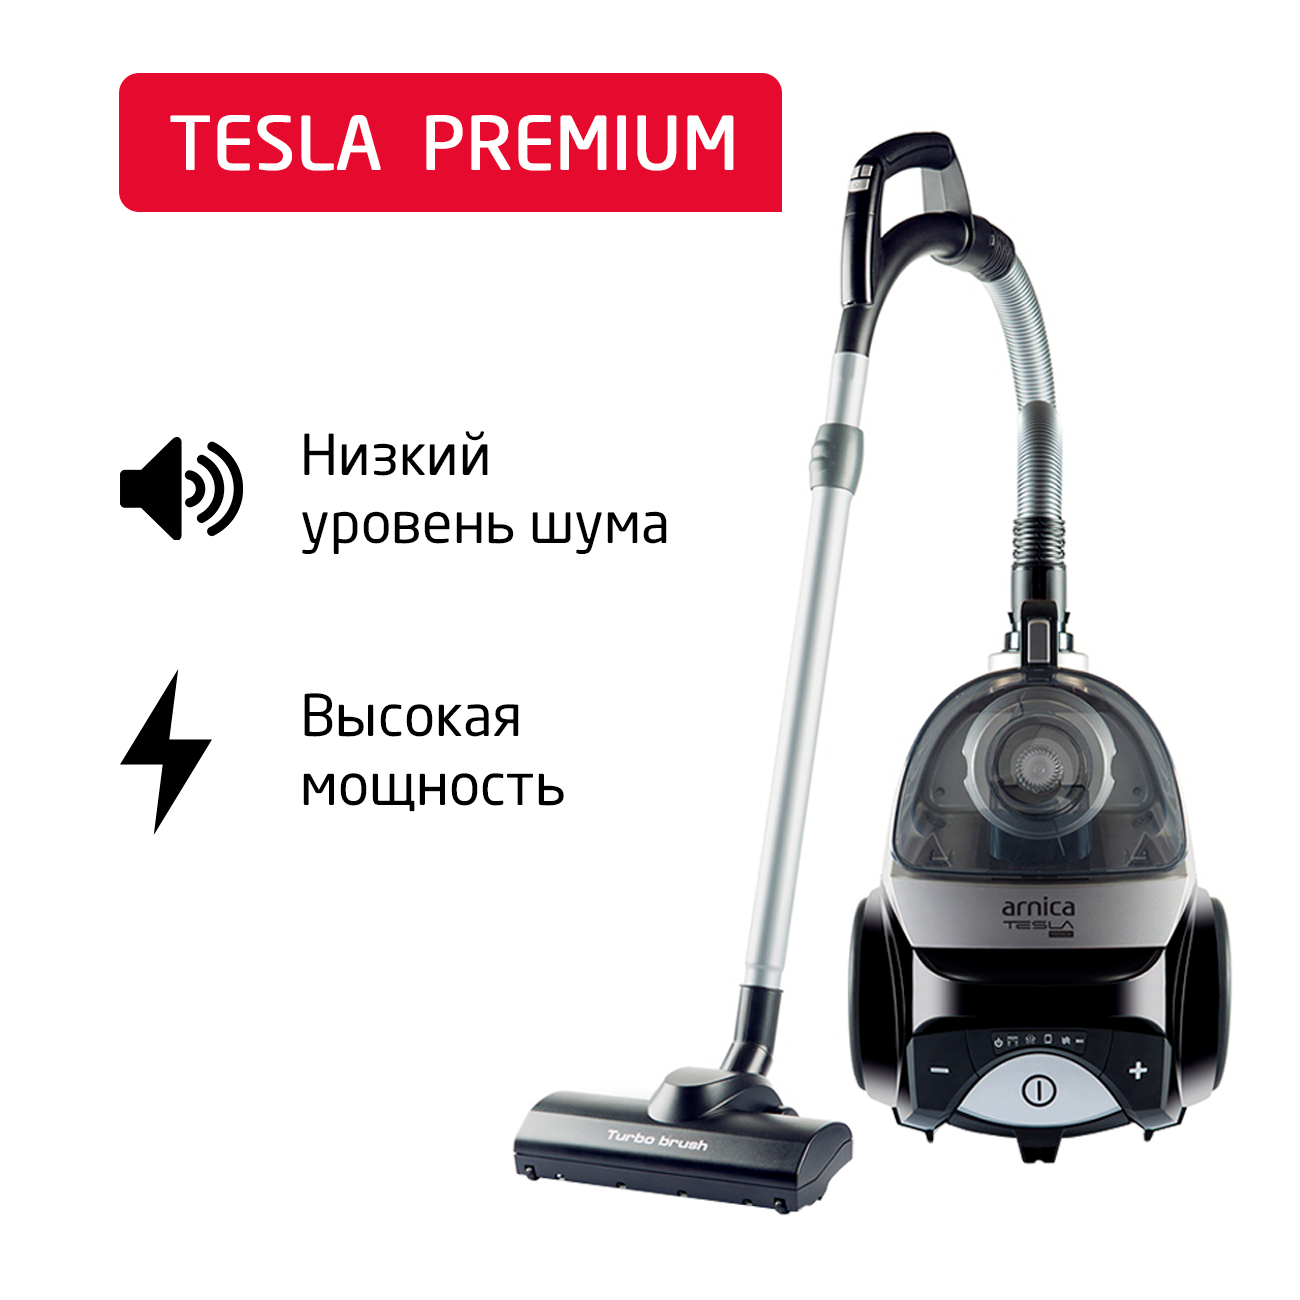 Пылесос ARNICA Tesla Premium серебристый, черный пылесос arnica tesla premium серебристый